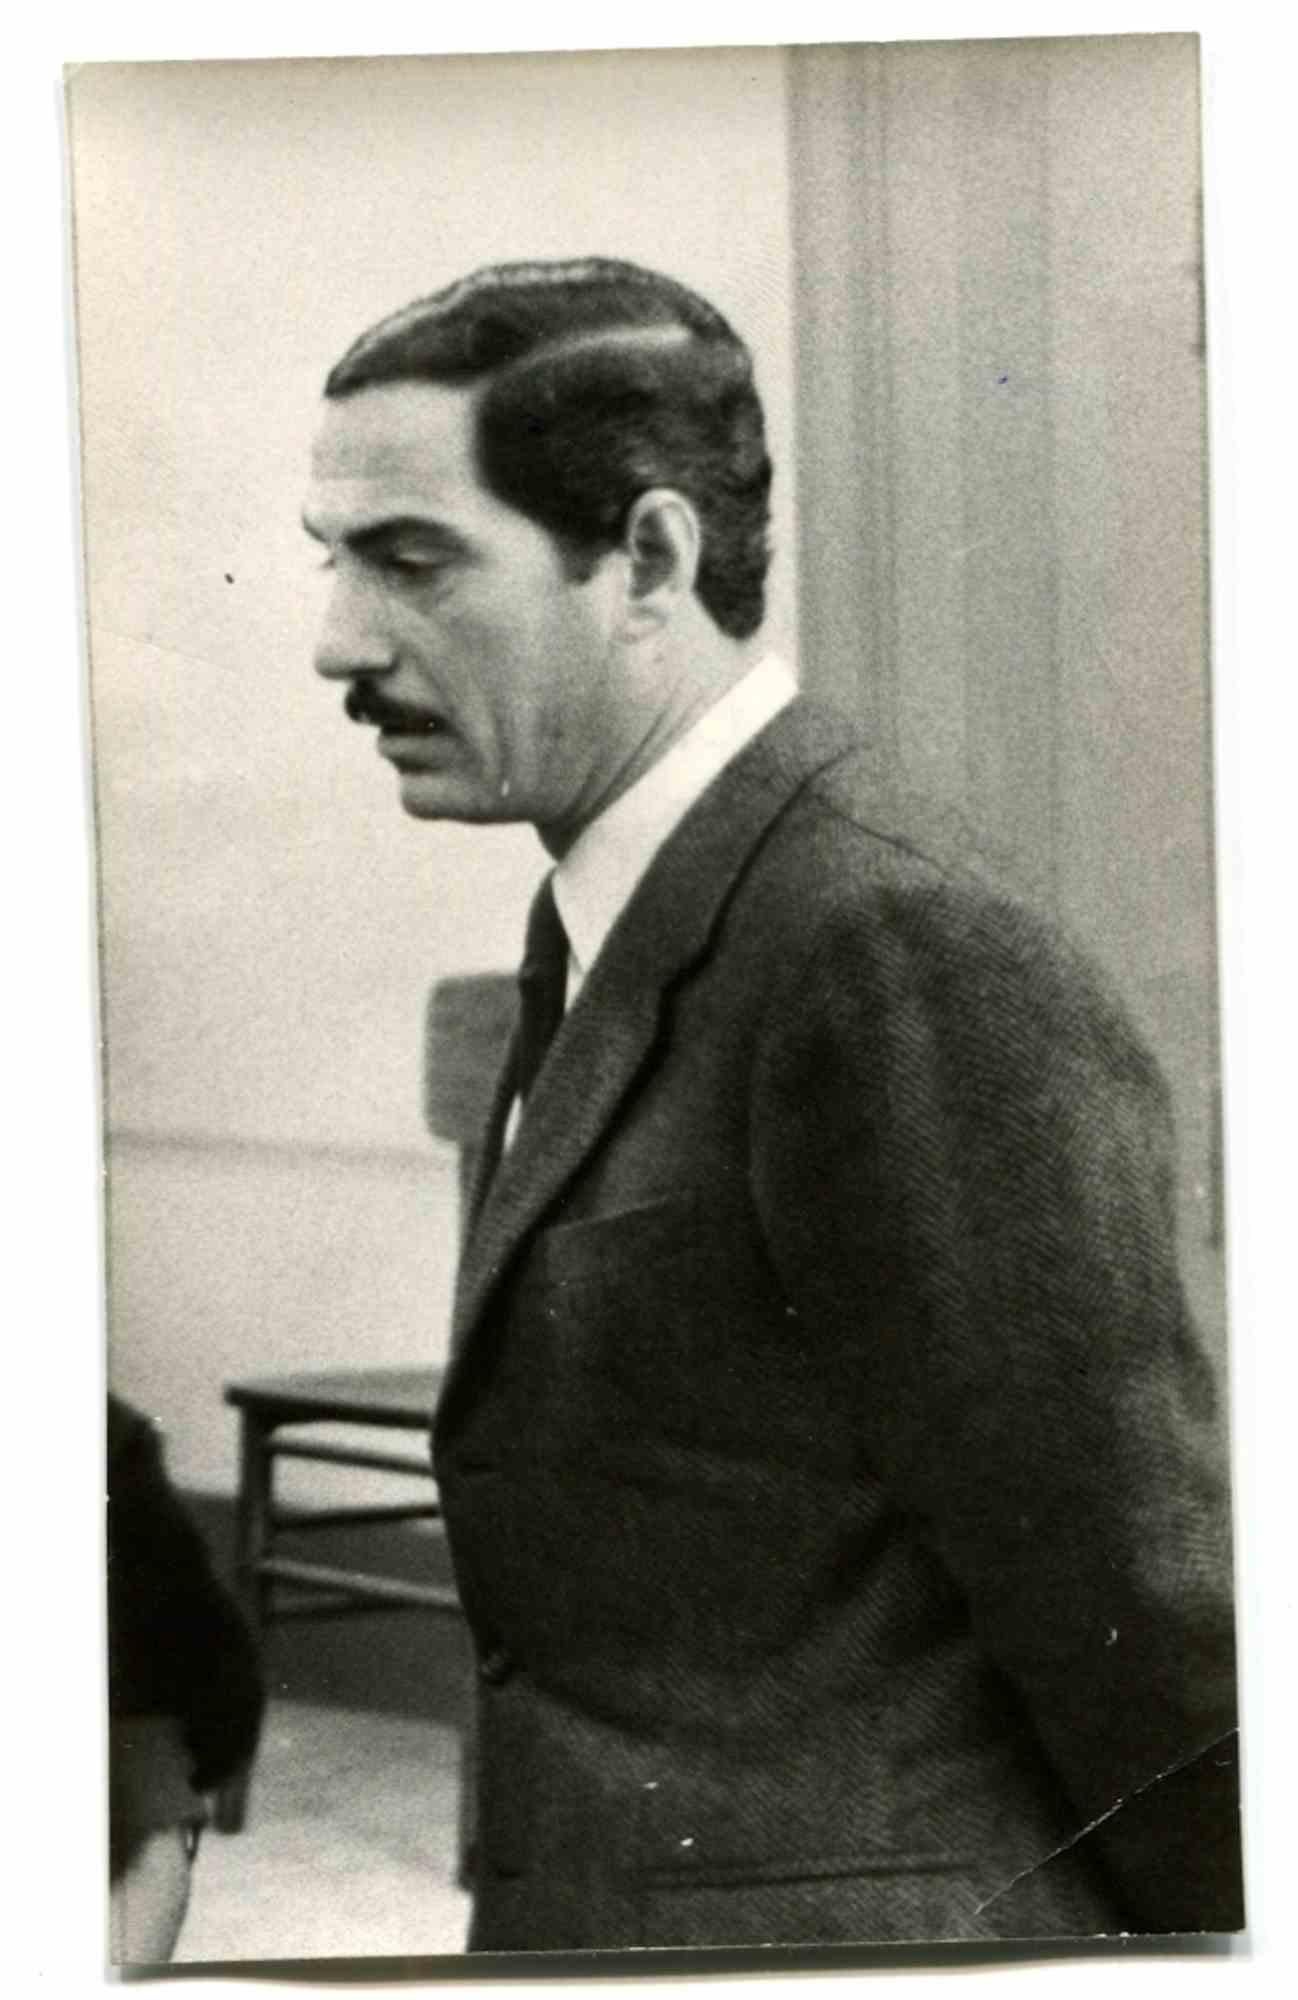 Unknown Figurative Photograph - Portrait of Nino Manfredi - Photo - 1960s